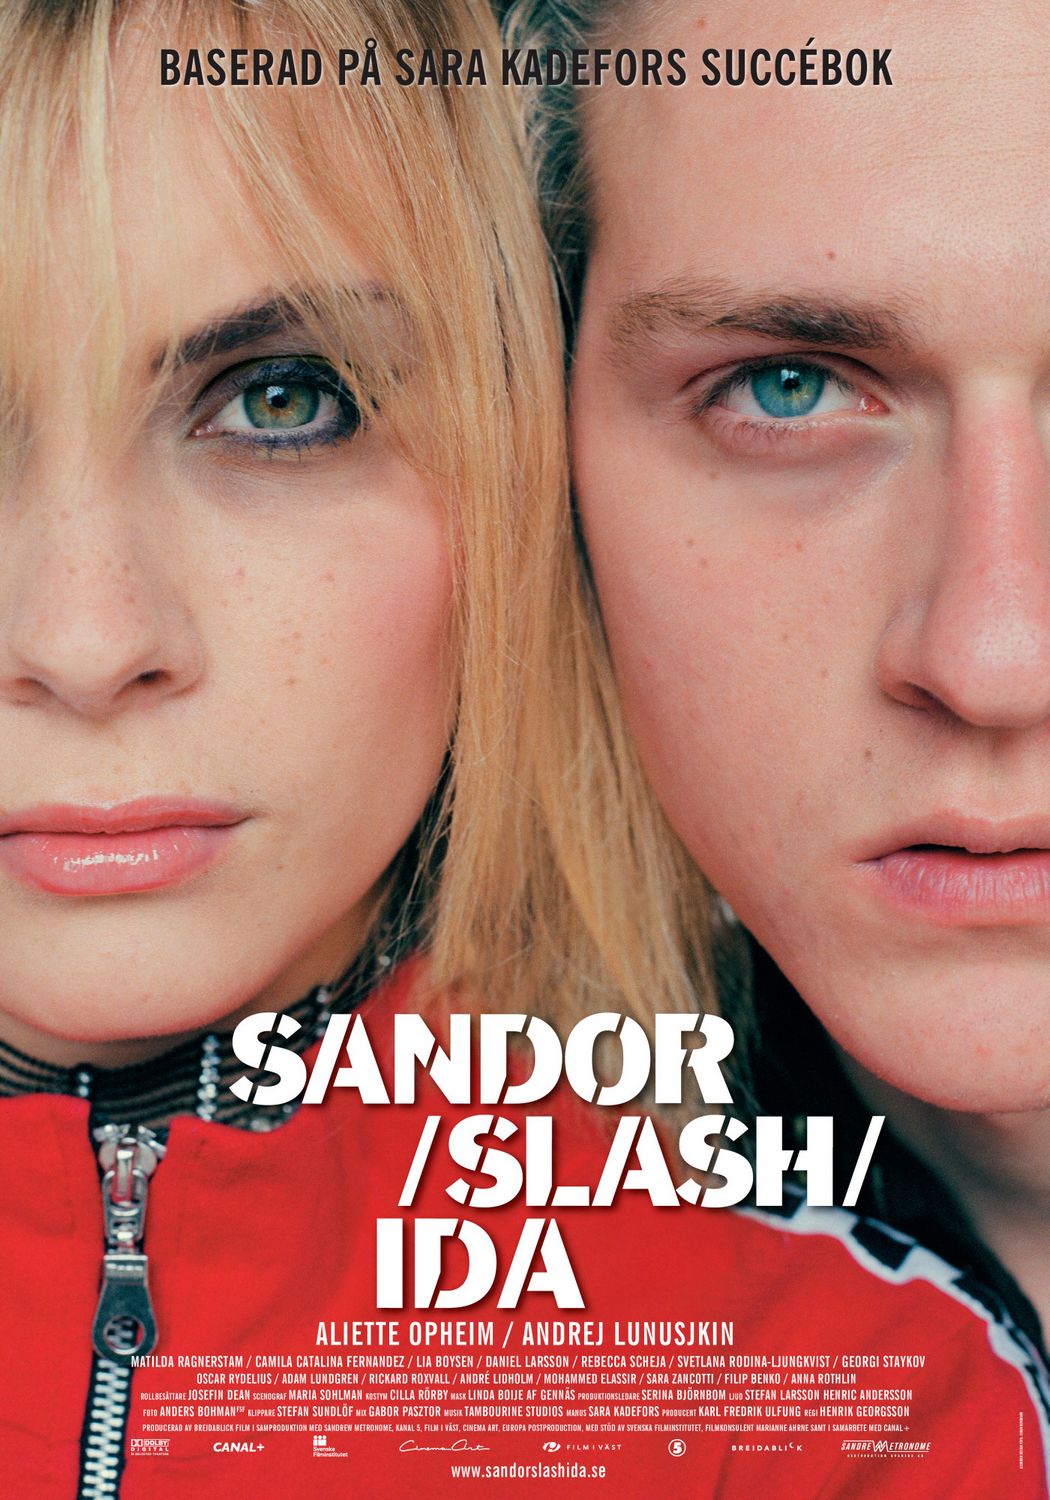 Extra Large Movie Poster Image for Sandor slash Ida 